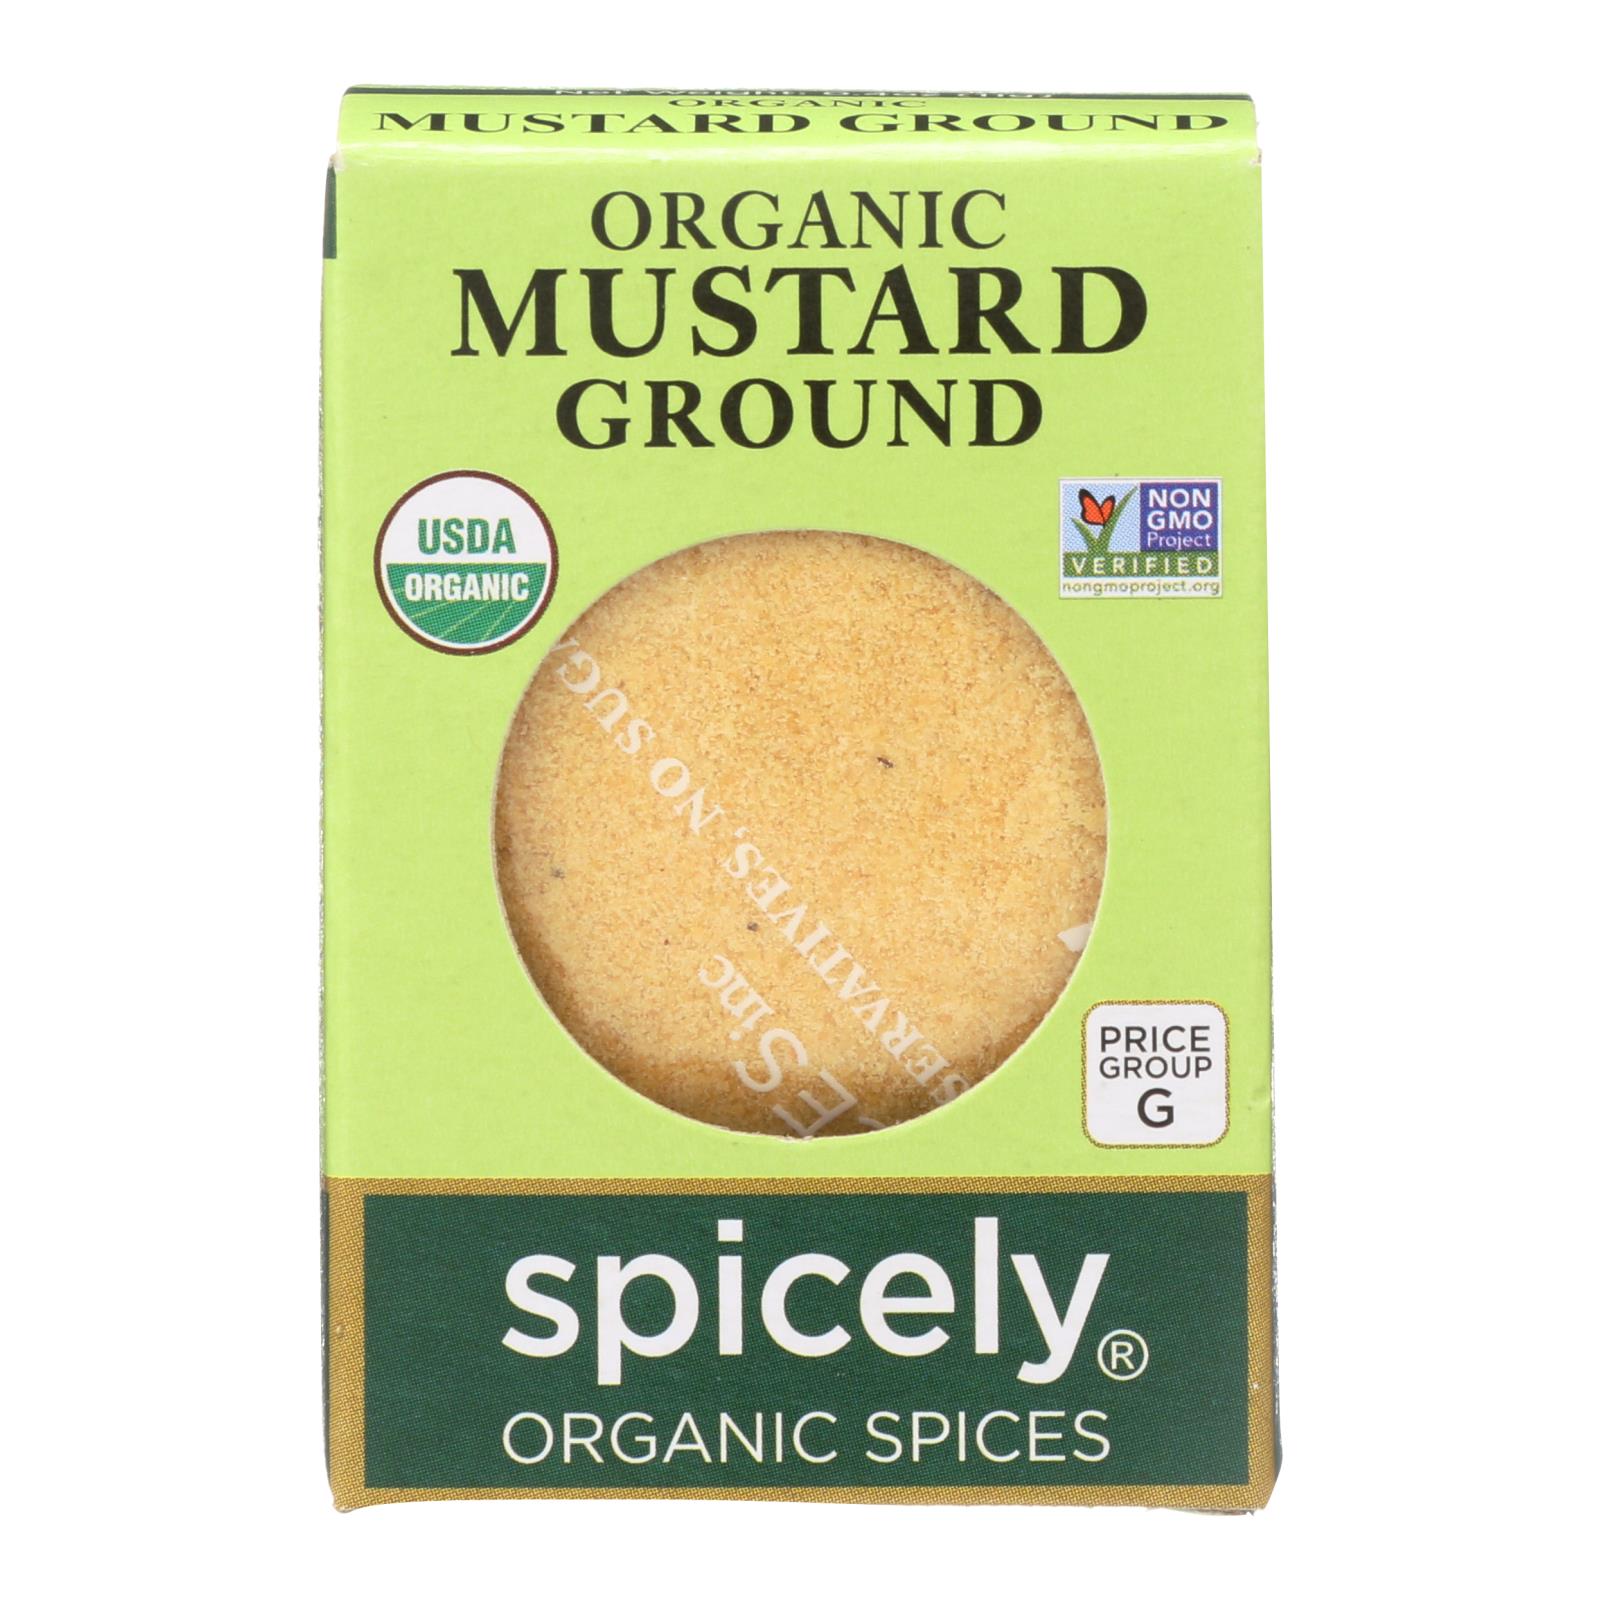 Spicely Organics - Organic Mustard - Ground - 6개 묶음상품 - 0.4 oz.